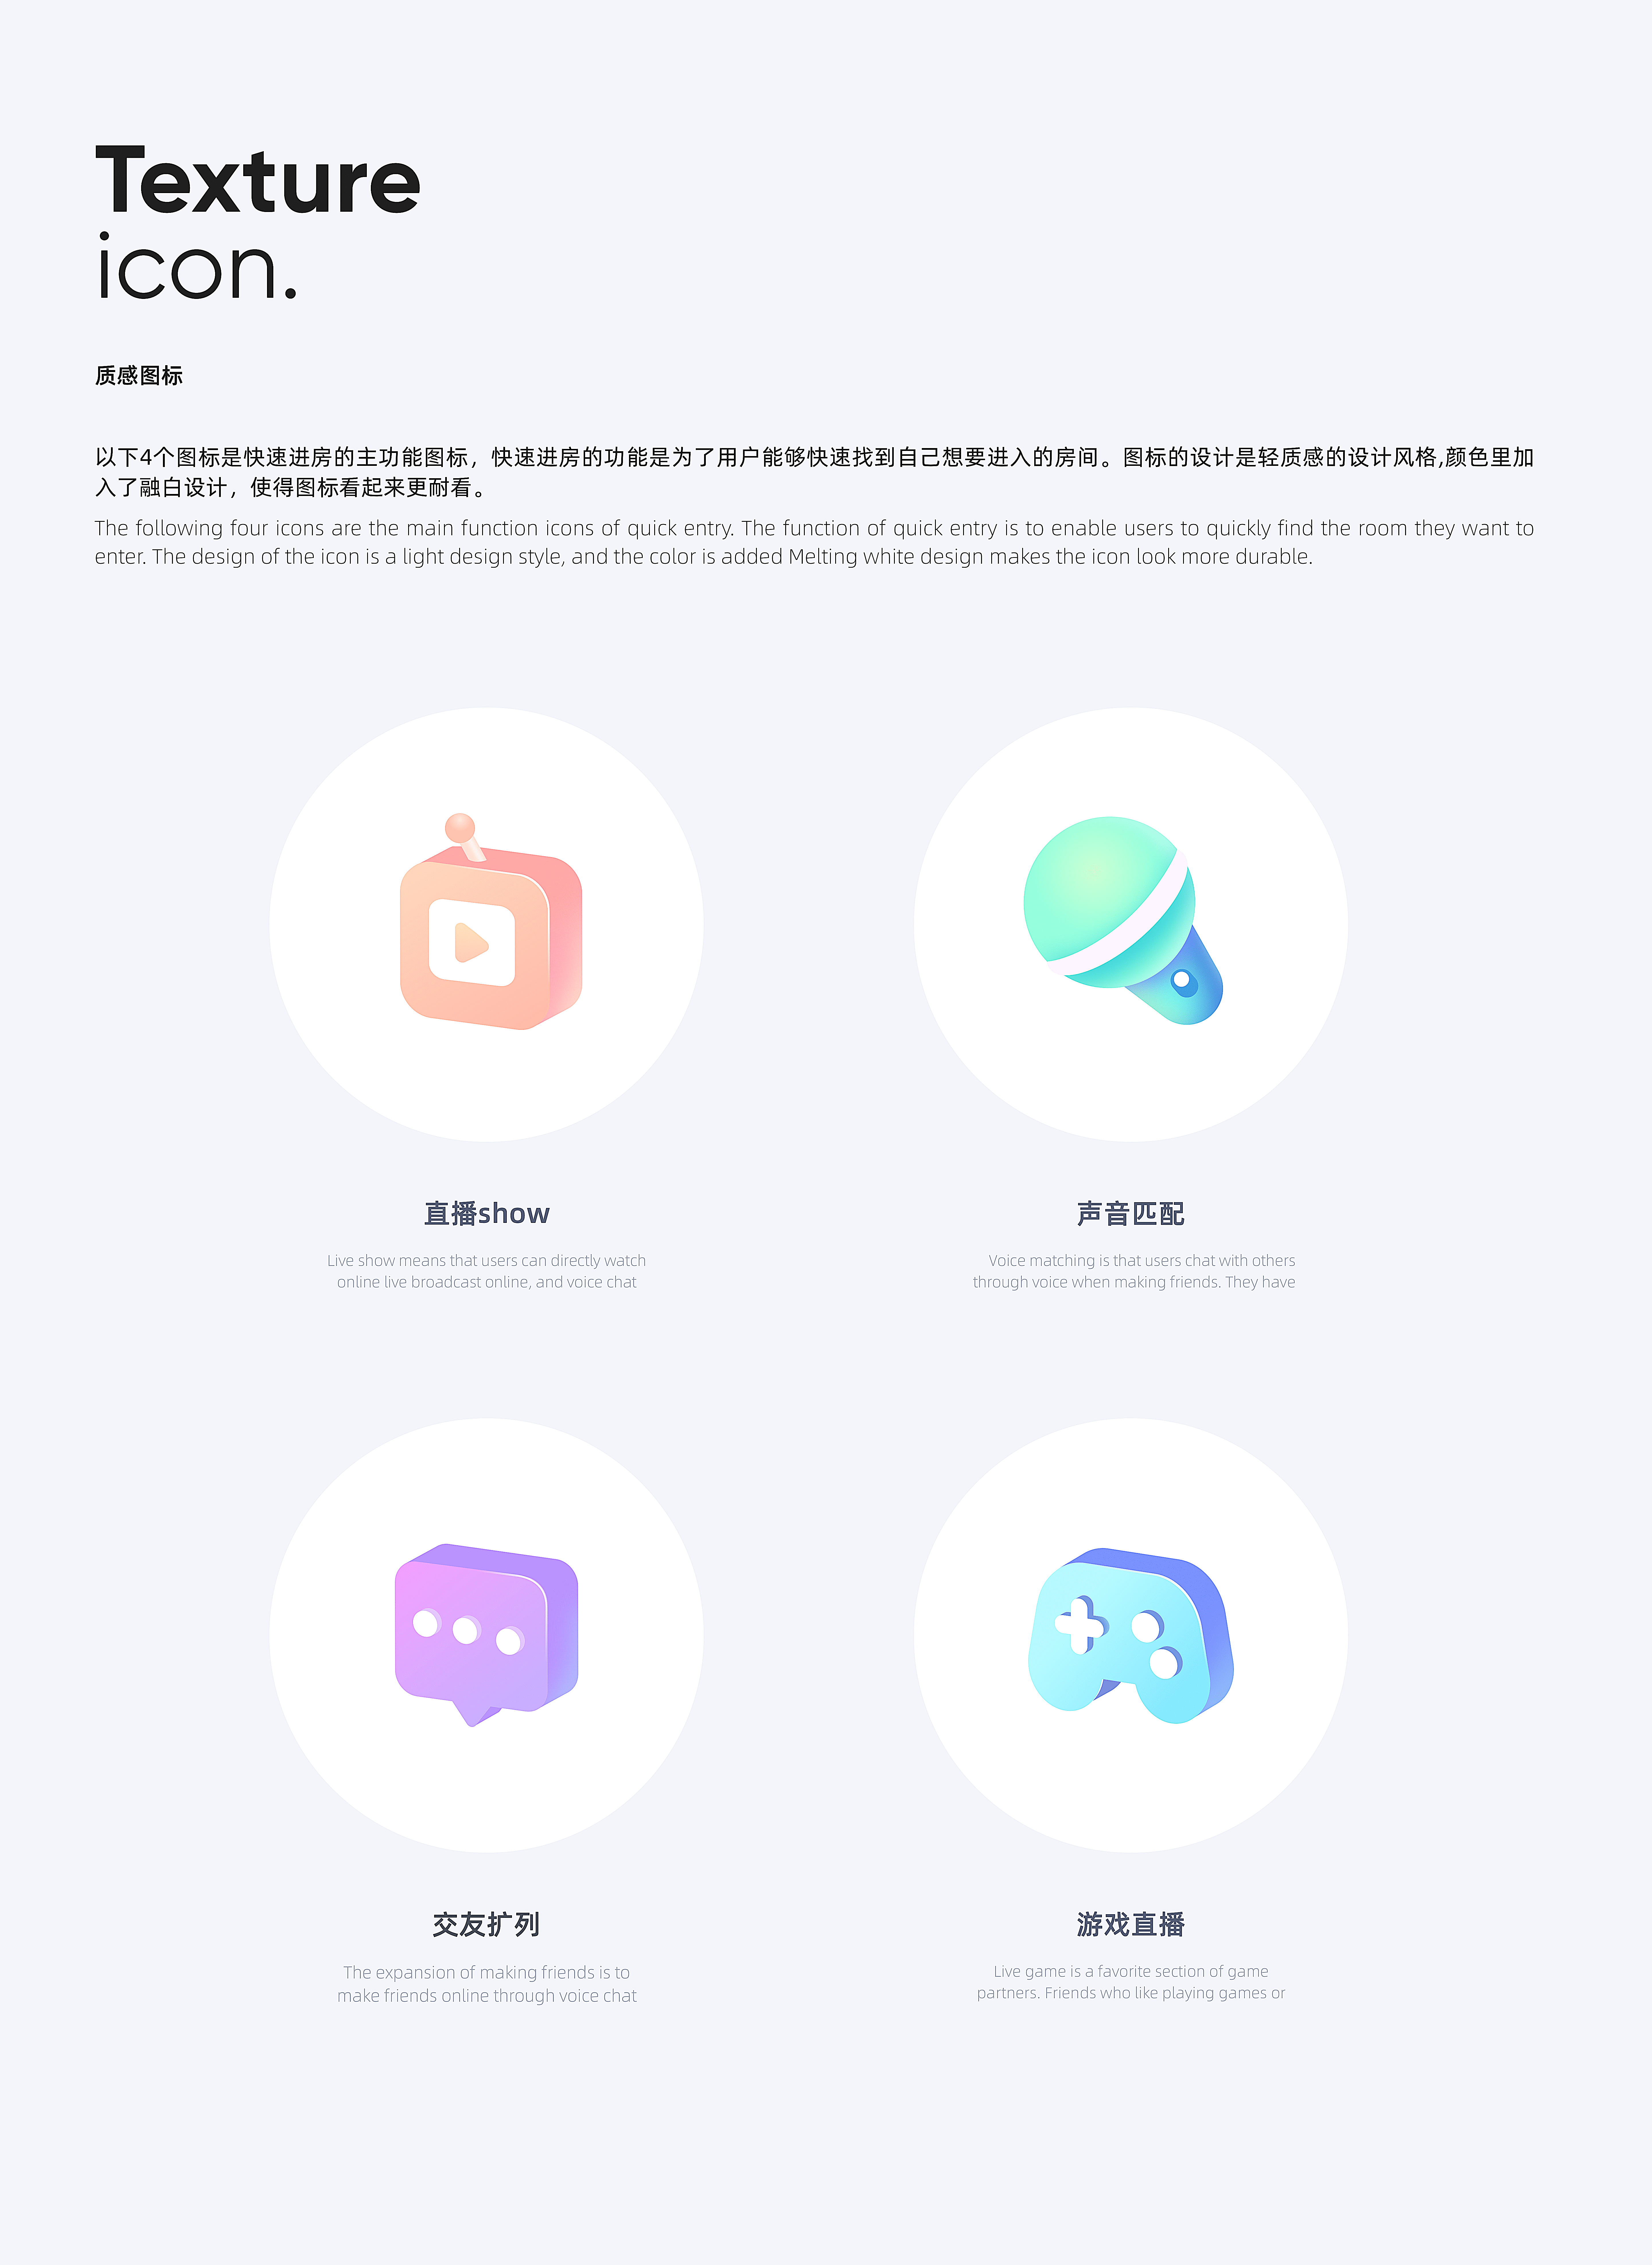 花吱app設計